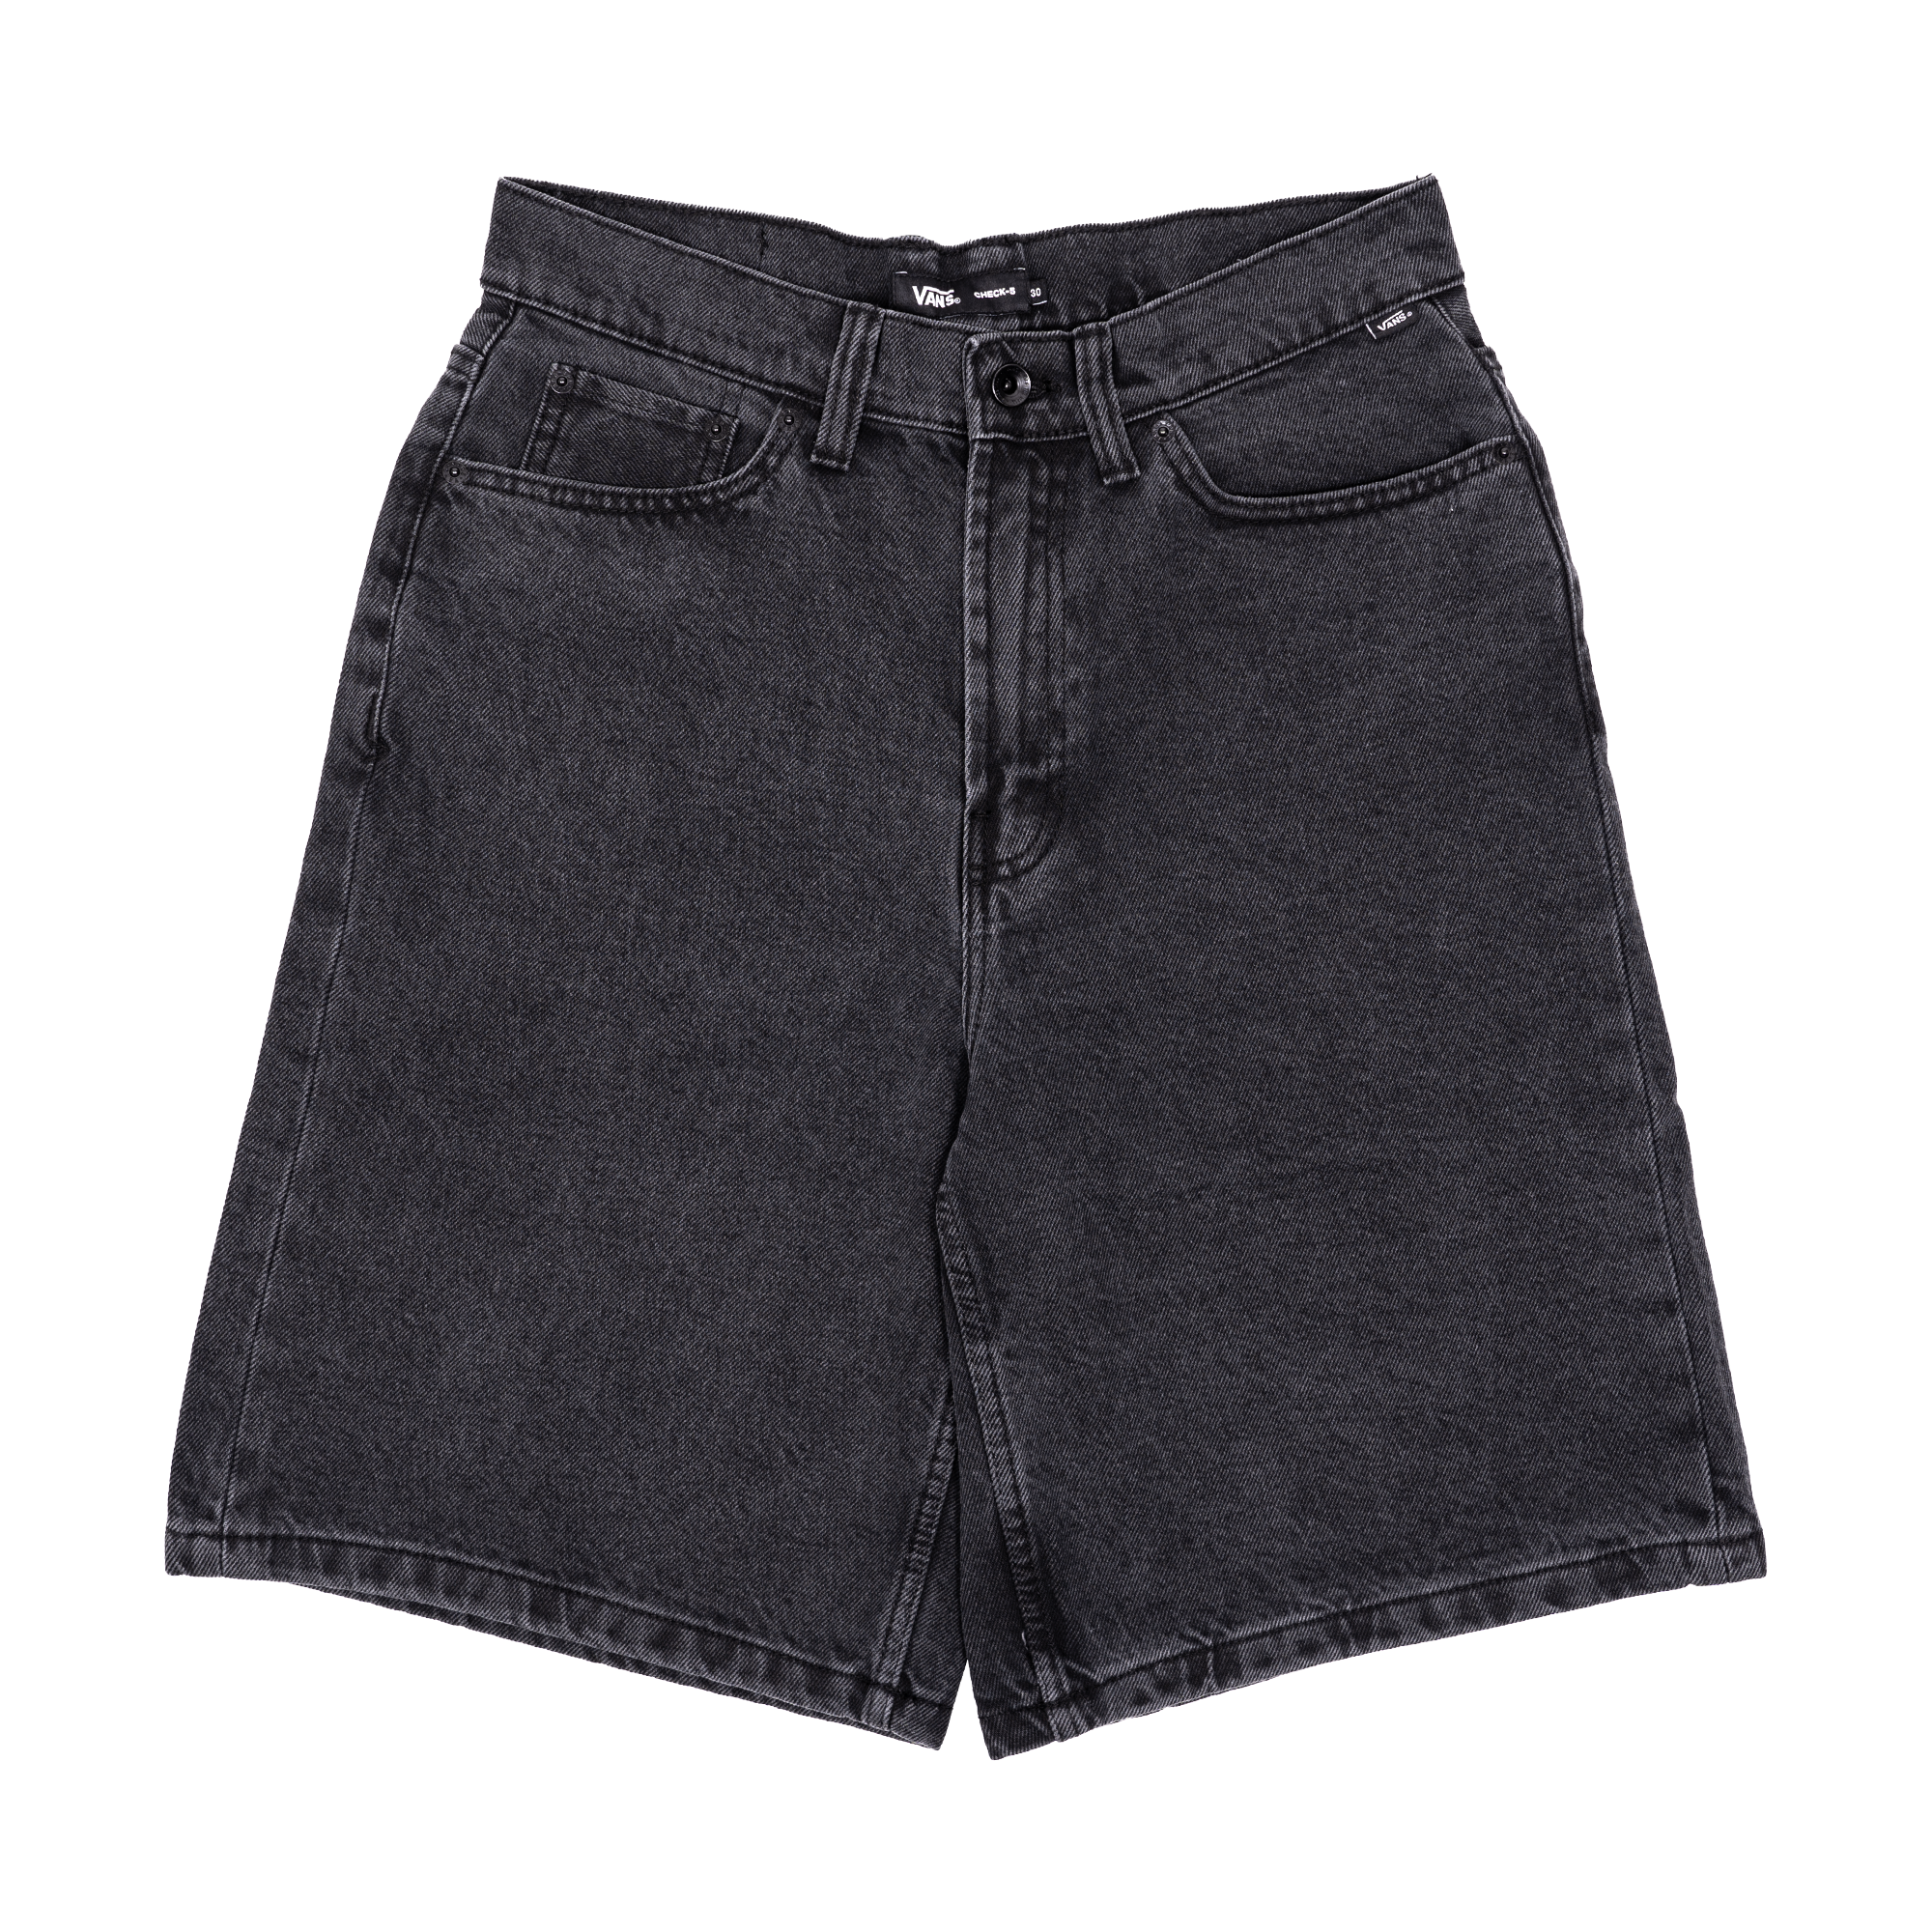 Vans Check-5 Baggy Denim Shorts - Washed Black